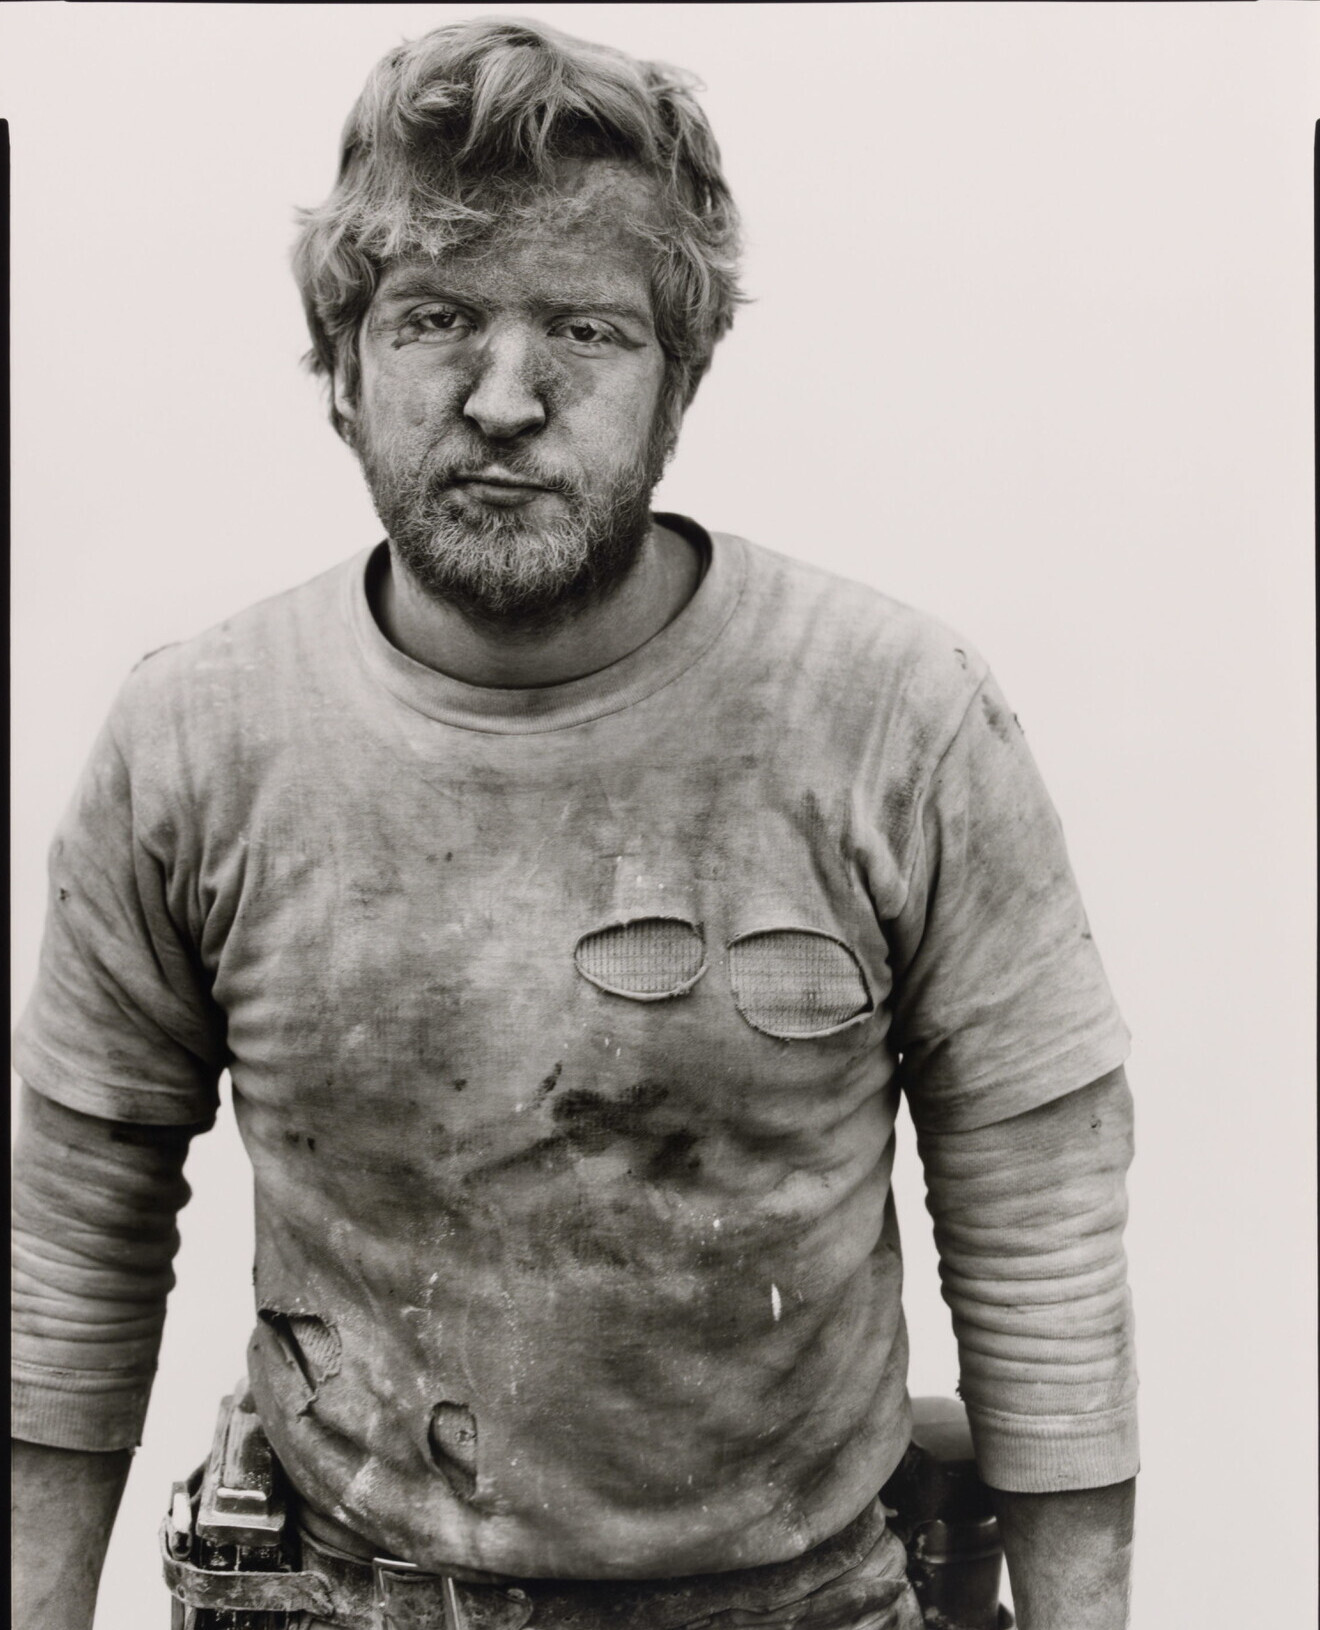 Джо Батлер, шахтер, Reliance, Вайоминг, 28 августа 1979 г. Фотограф Ричард Аведон